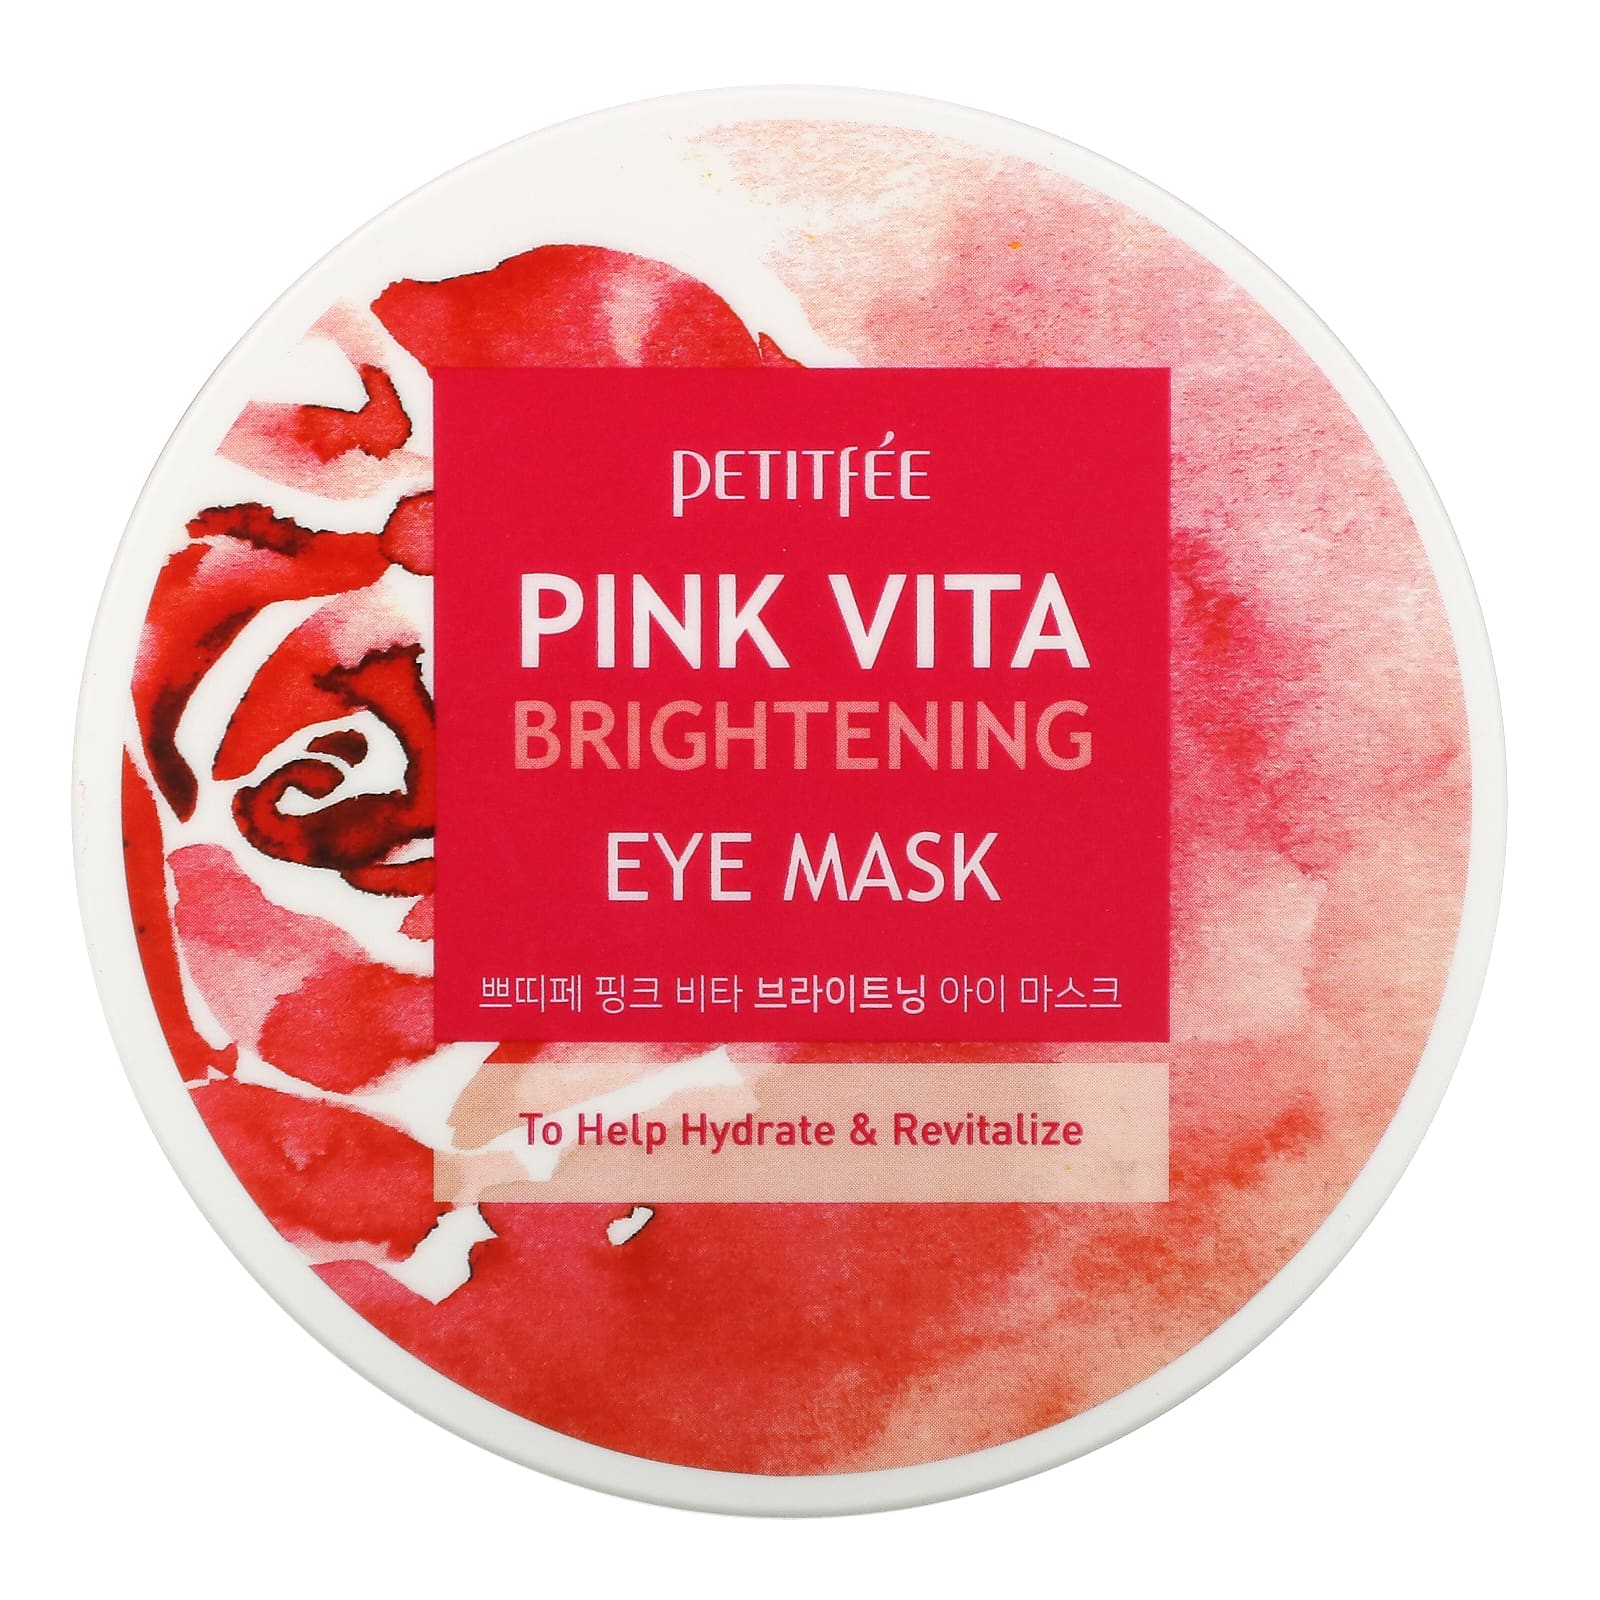 Petitfee, Pink Vita Brightening Eye Mask (70 g)